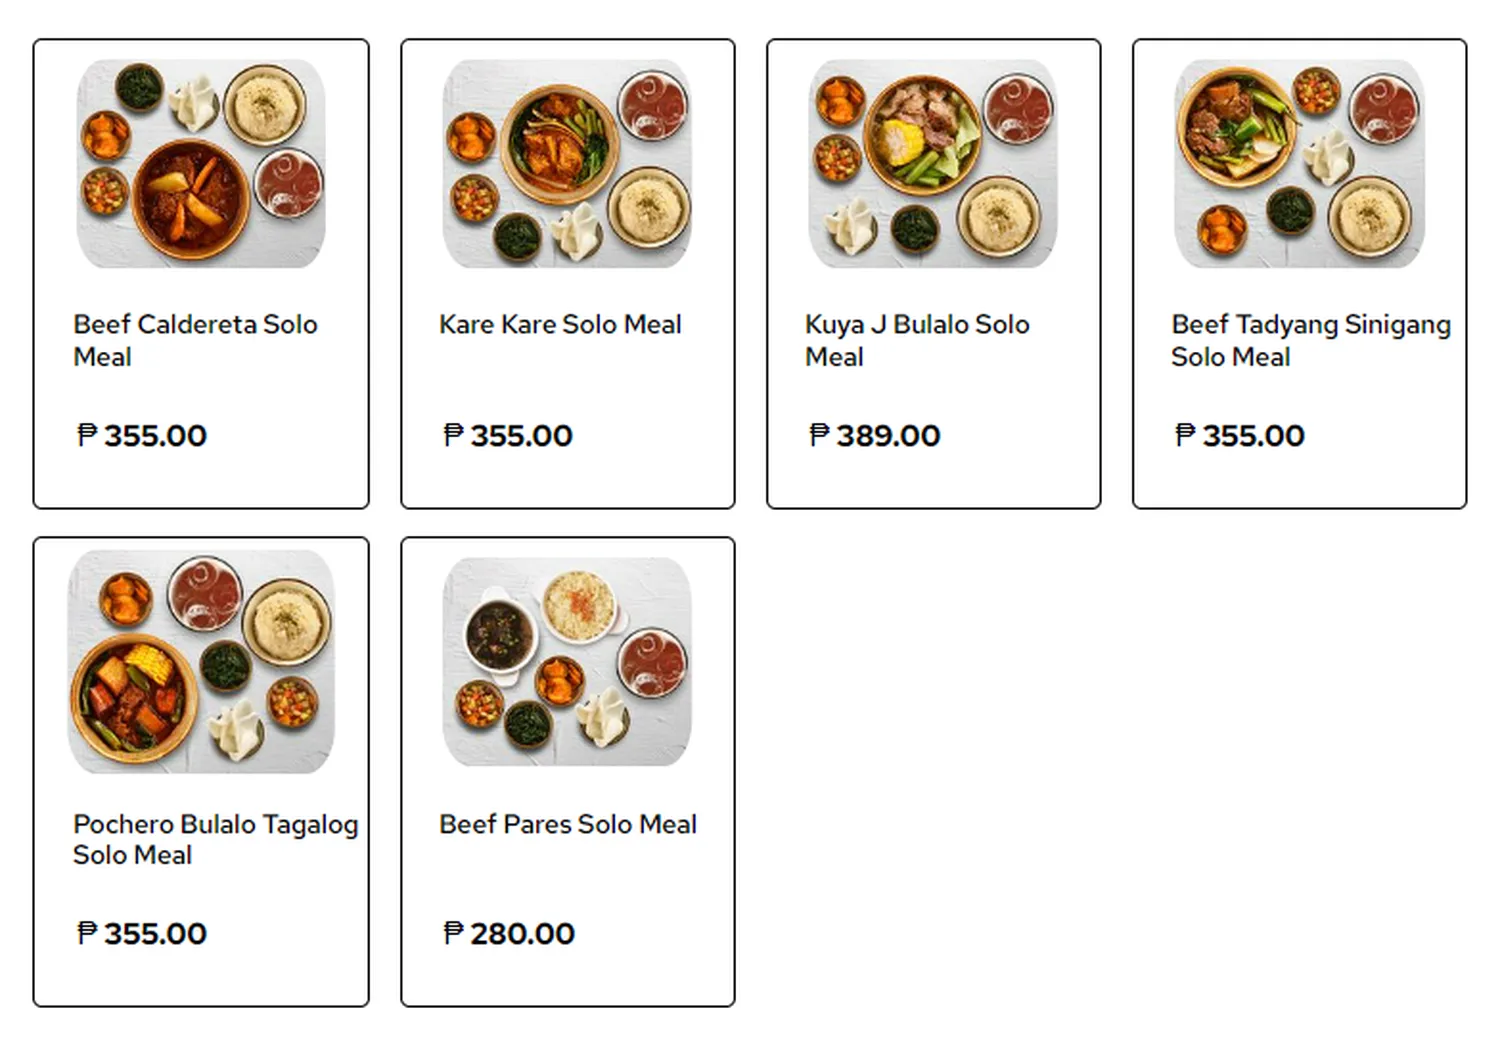 kuya j menu philippine solo beef